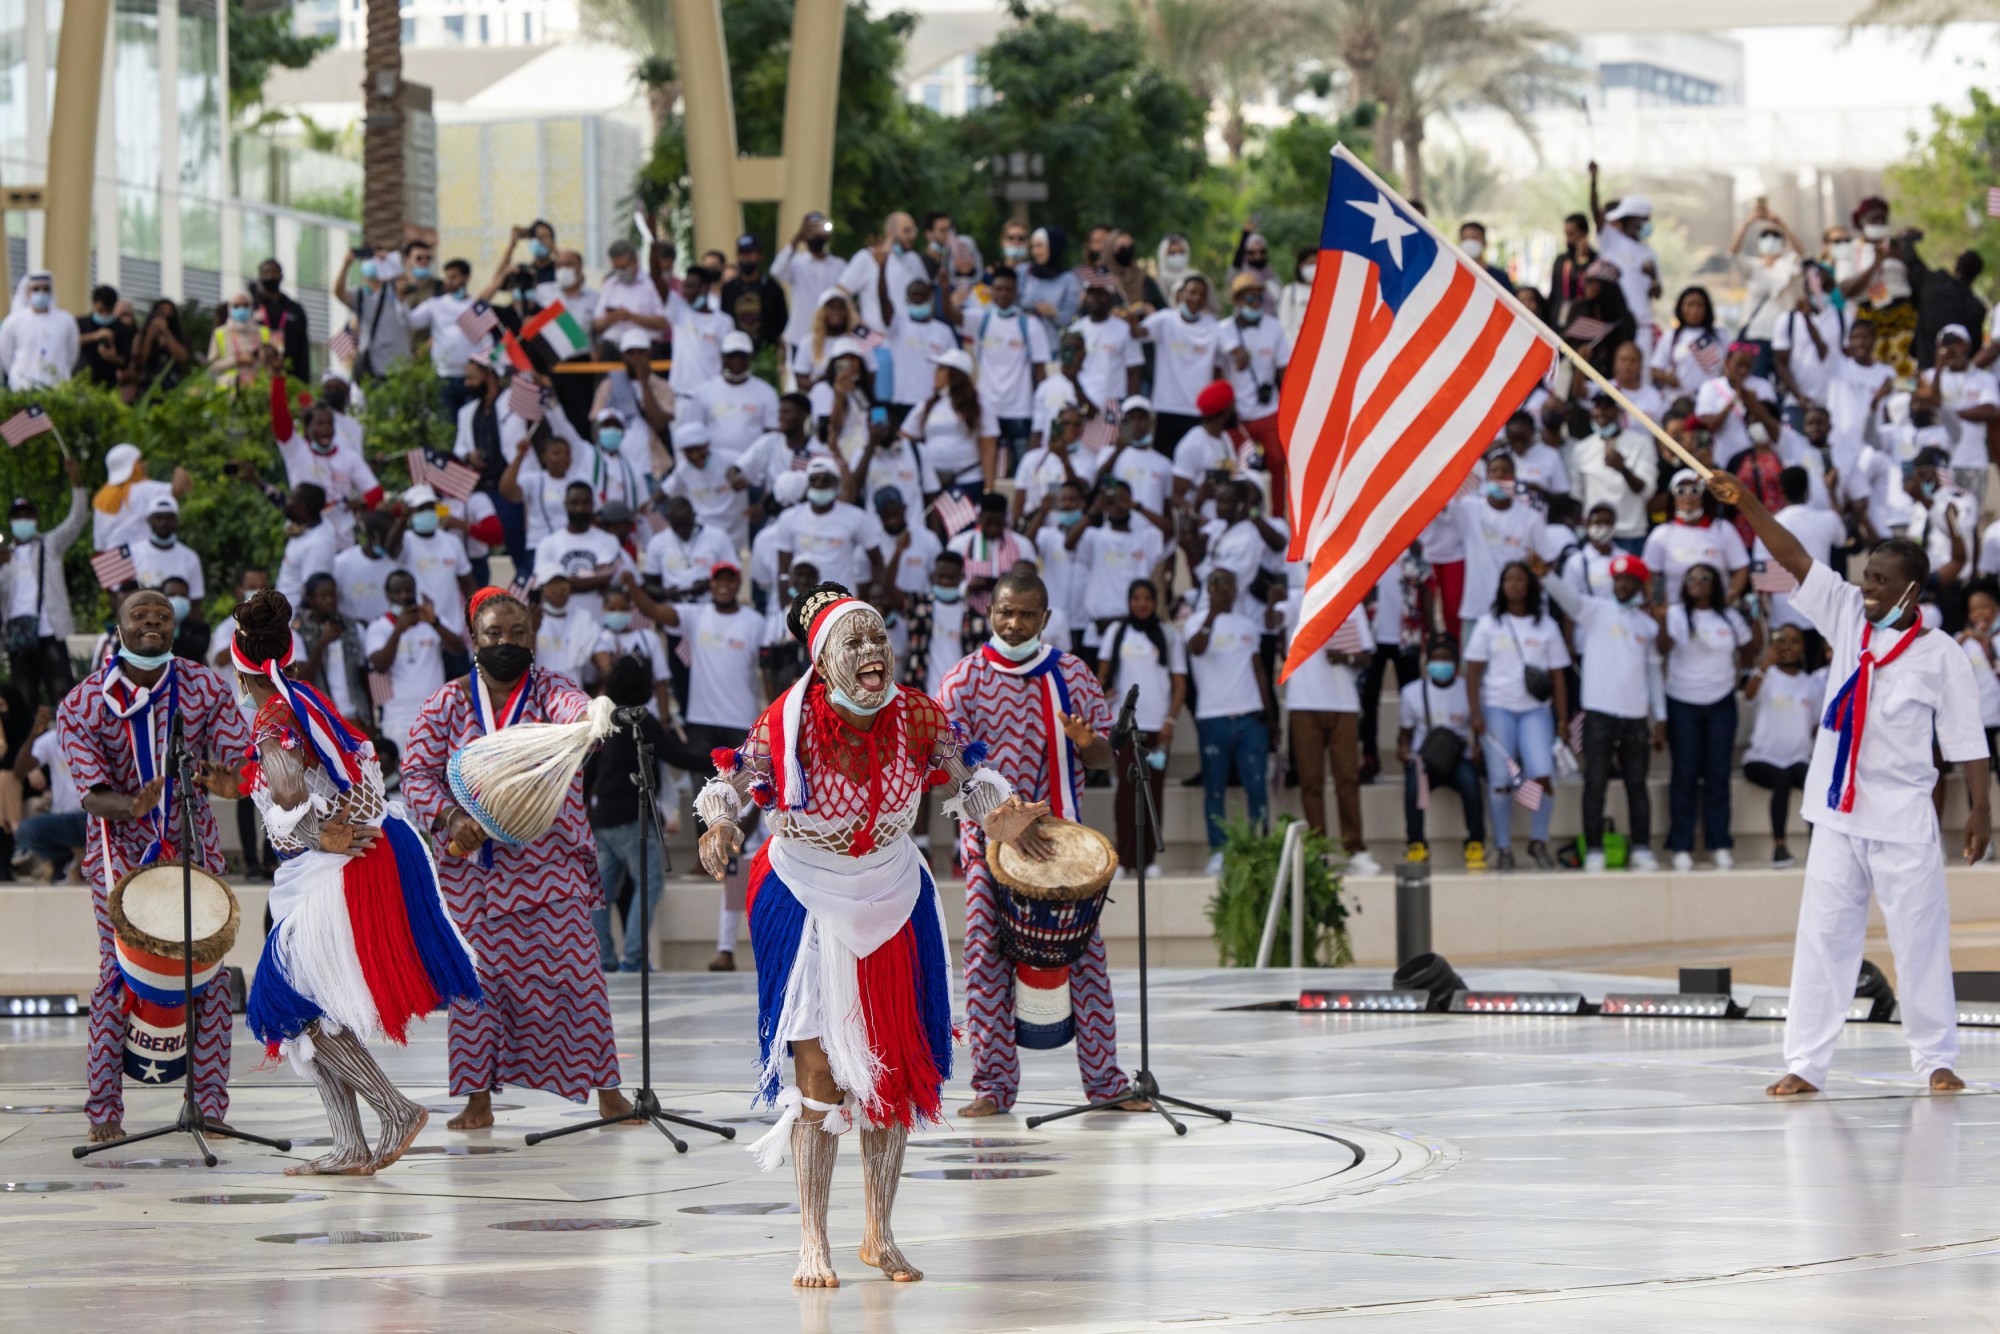 Liberia Cultural Performance at Al Wasl m15113